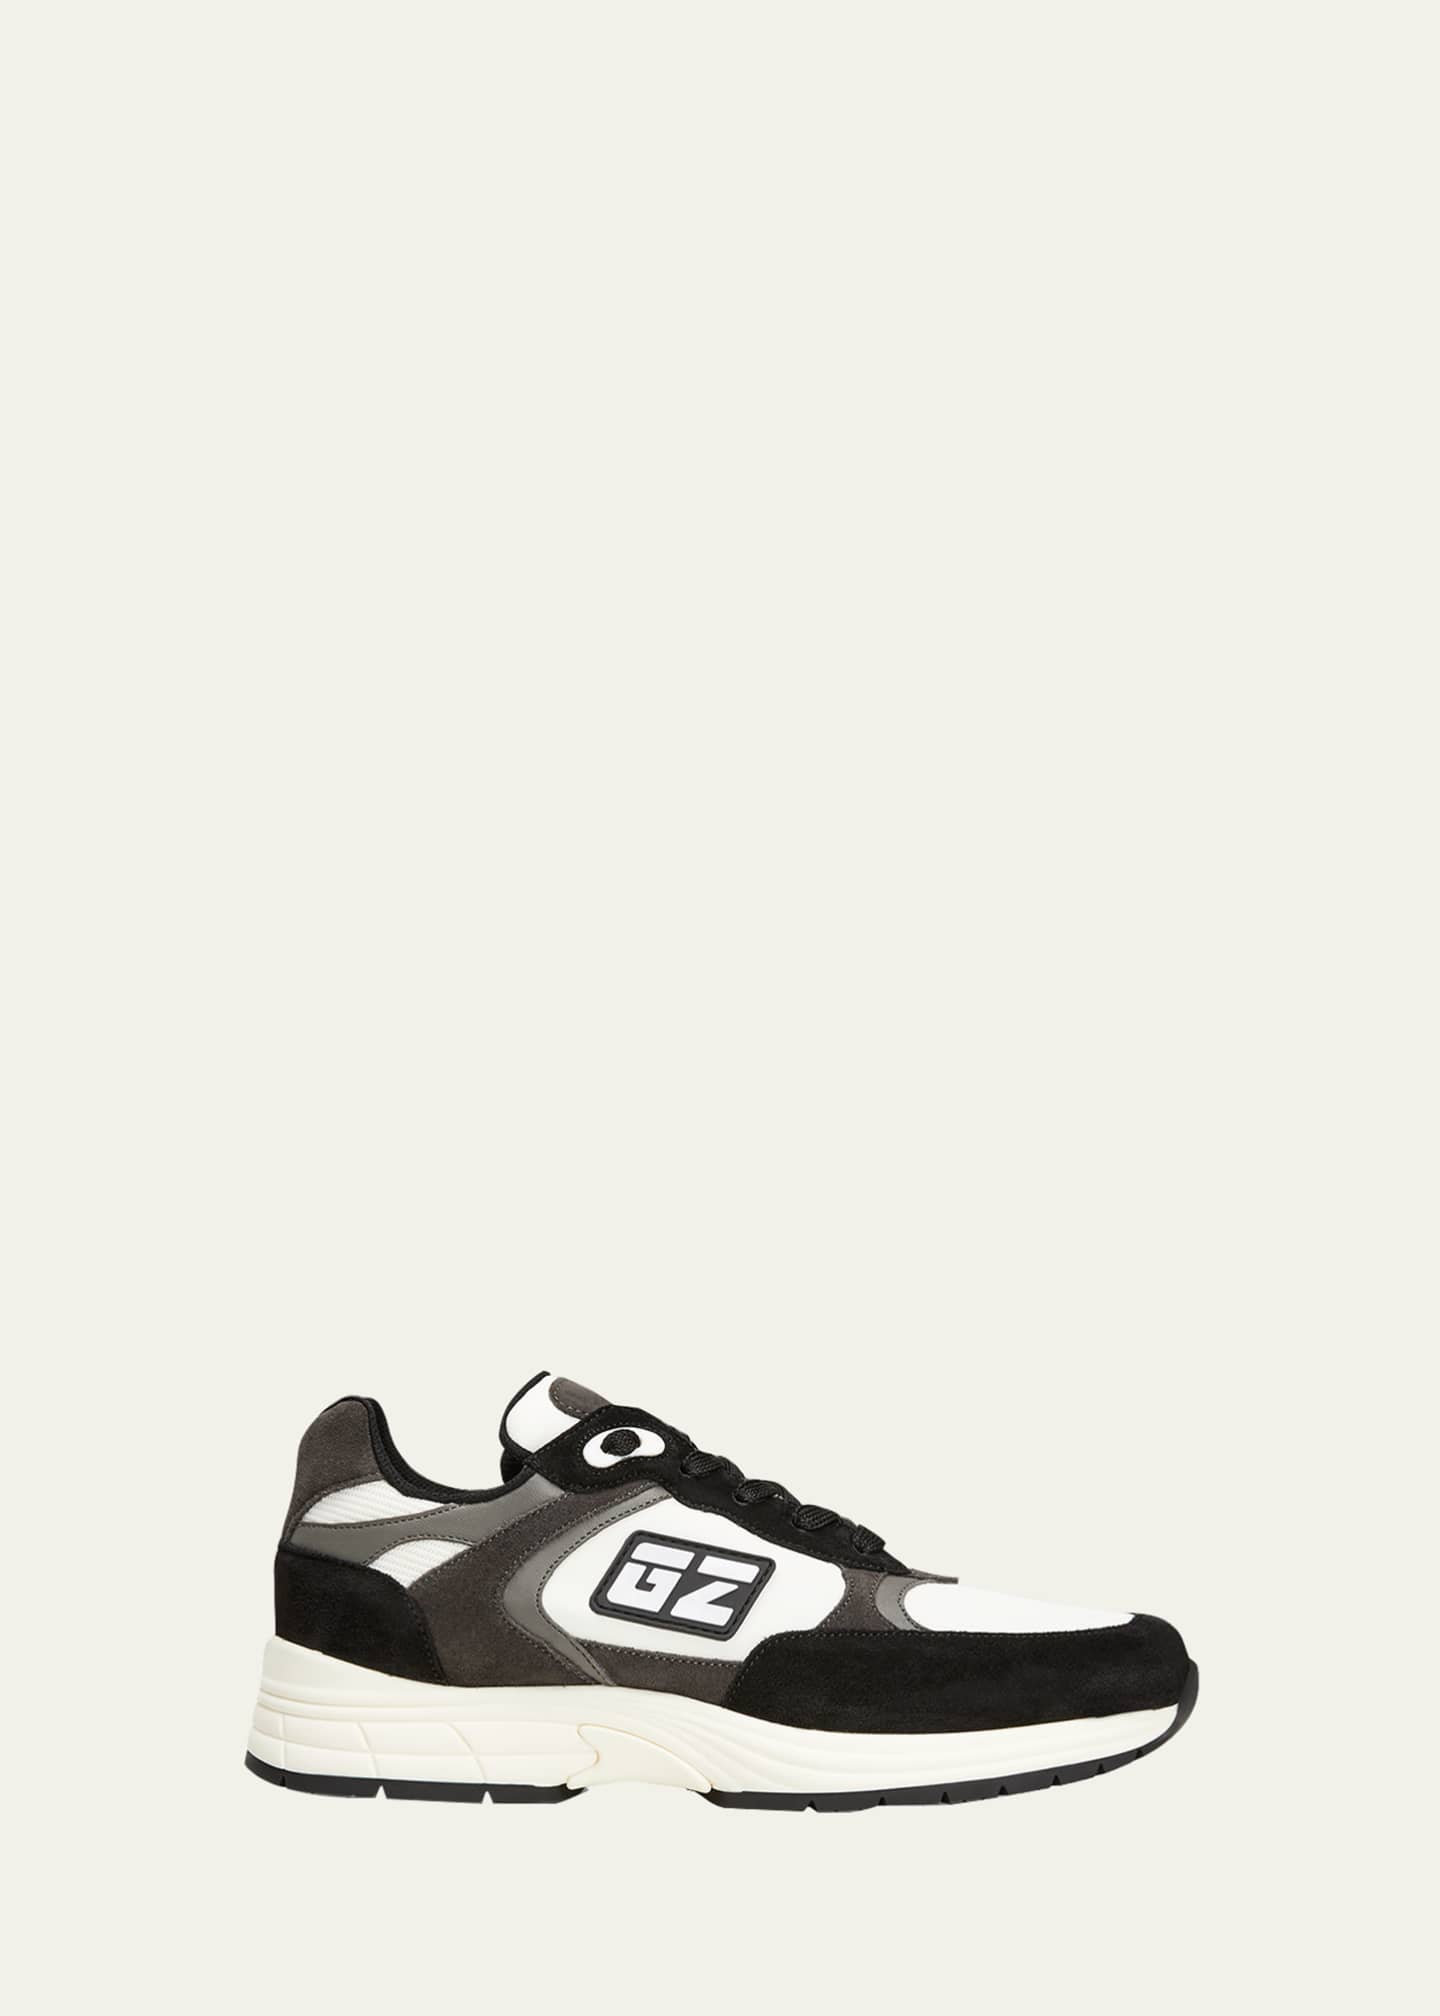 argument baseball Dårligt humør Giuseppe Zanotti Men's GZ Runner Sneakers - Bergdorf Goodman